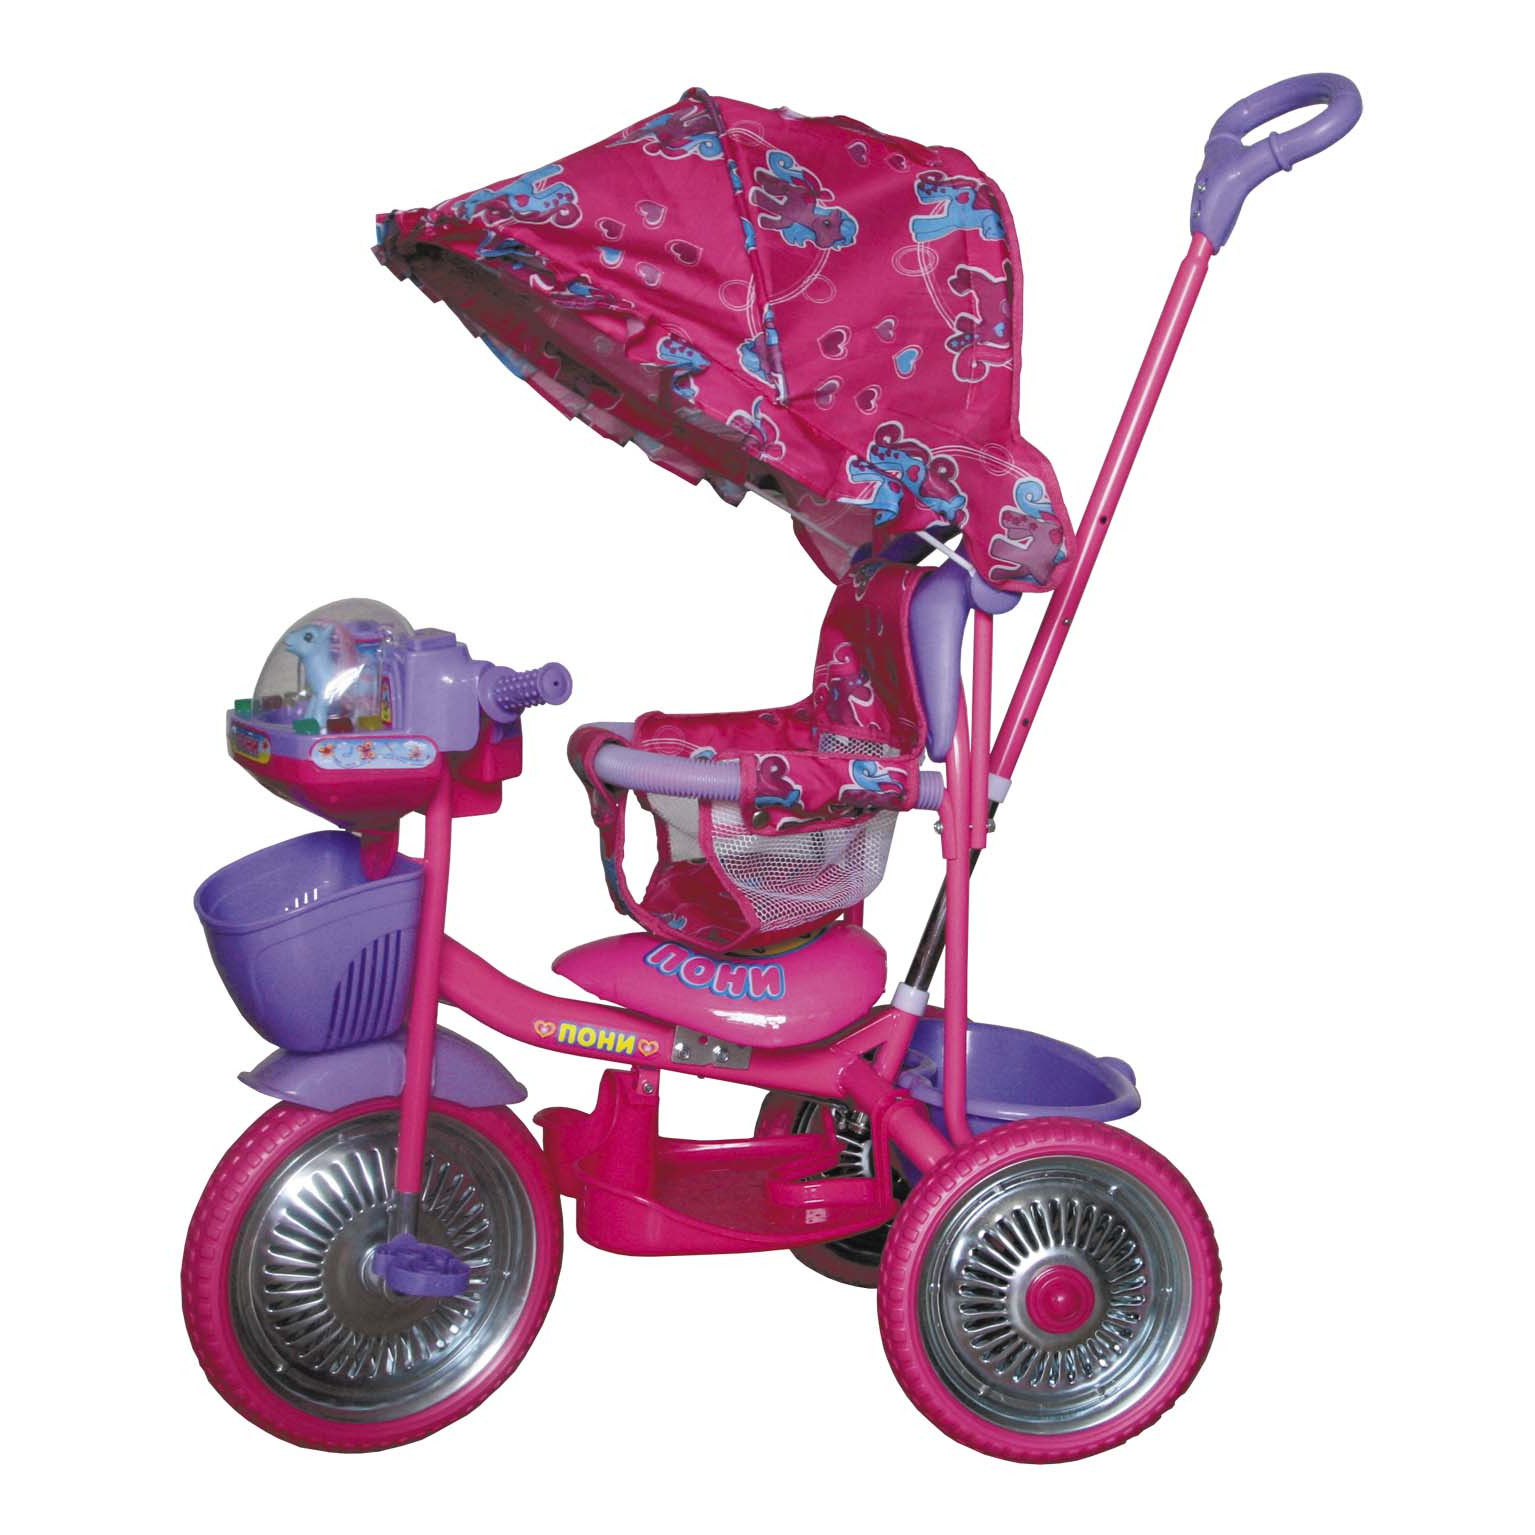 Купить на авито трехколесный велосипед с ручкой. Велосипед 3-х колесный "Чижик". Детский велосипед Чижик трехколесный с ручкой. Розовый трехколесный велосипед Чижик. Трехколесный велосипед Dendi tr16015 розовый.